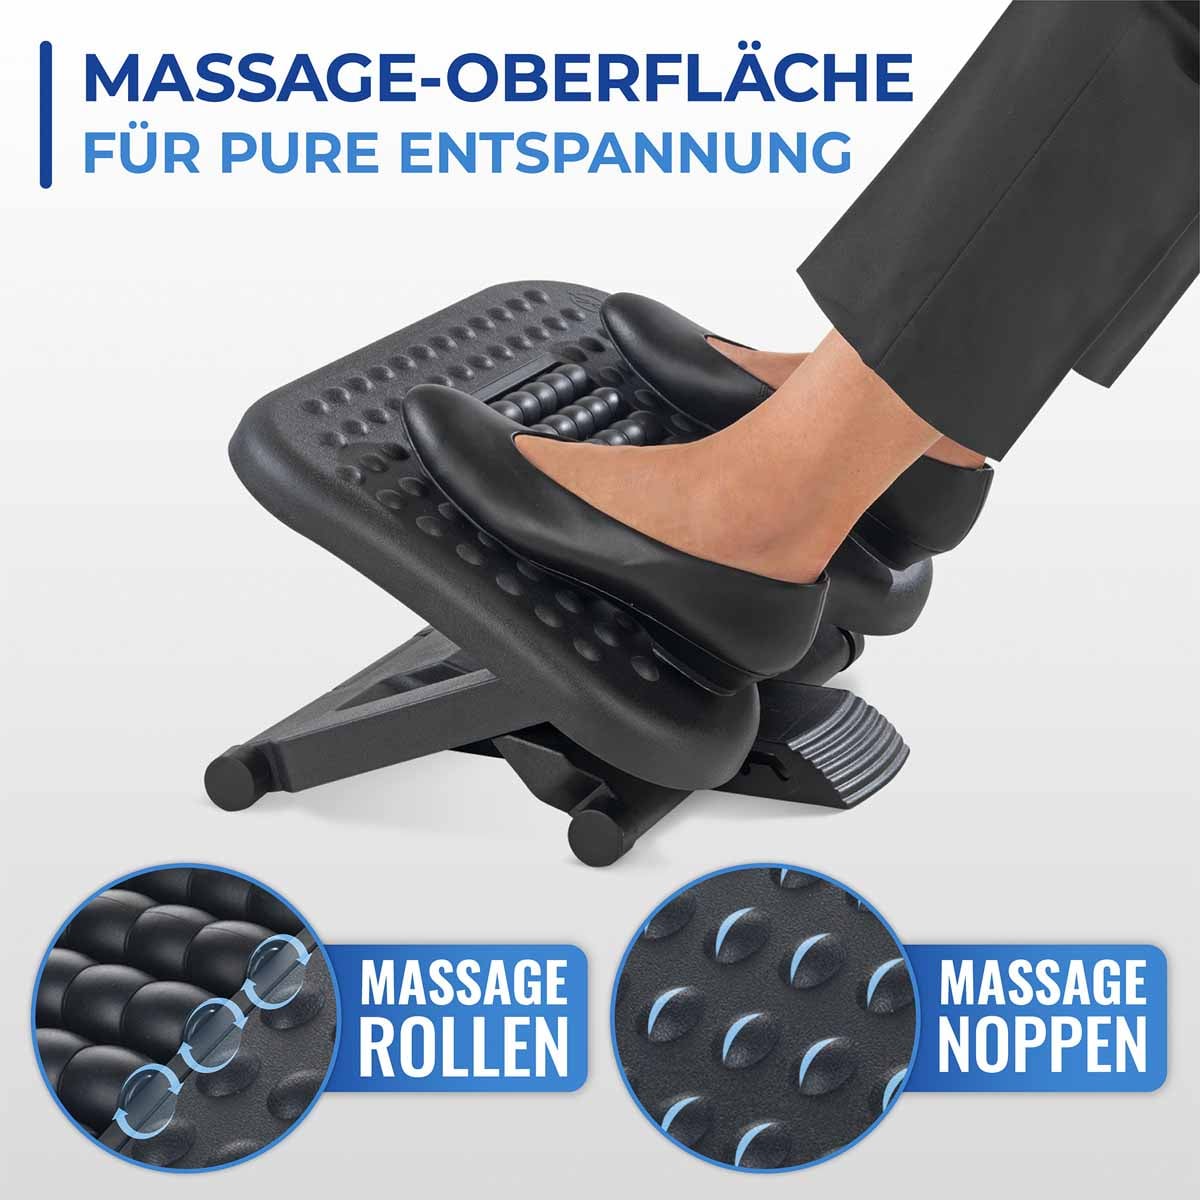 3in1 Verstellbare Fußstütze mit Massagerollen